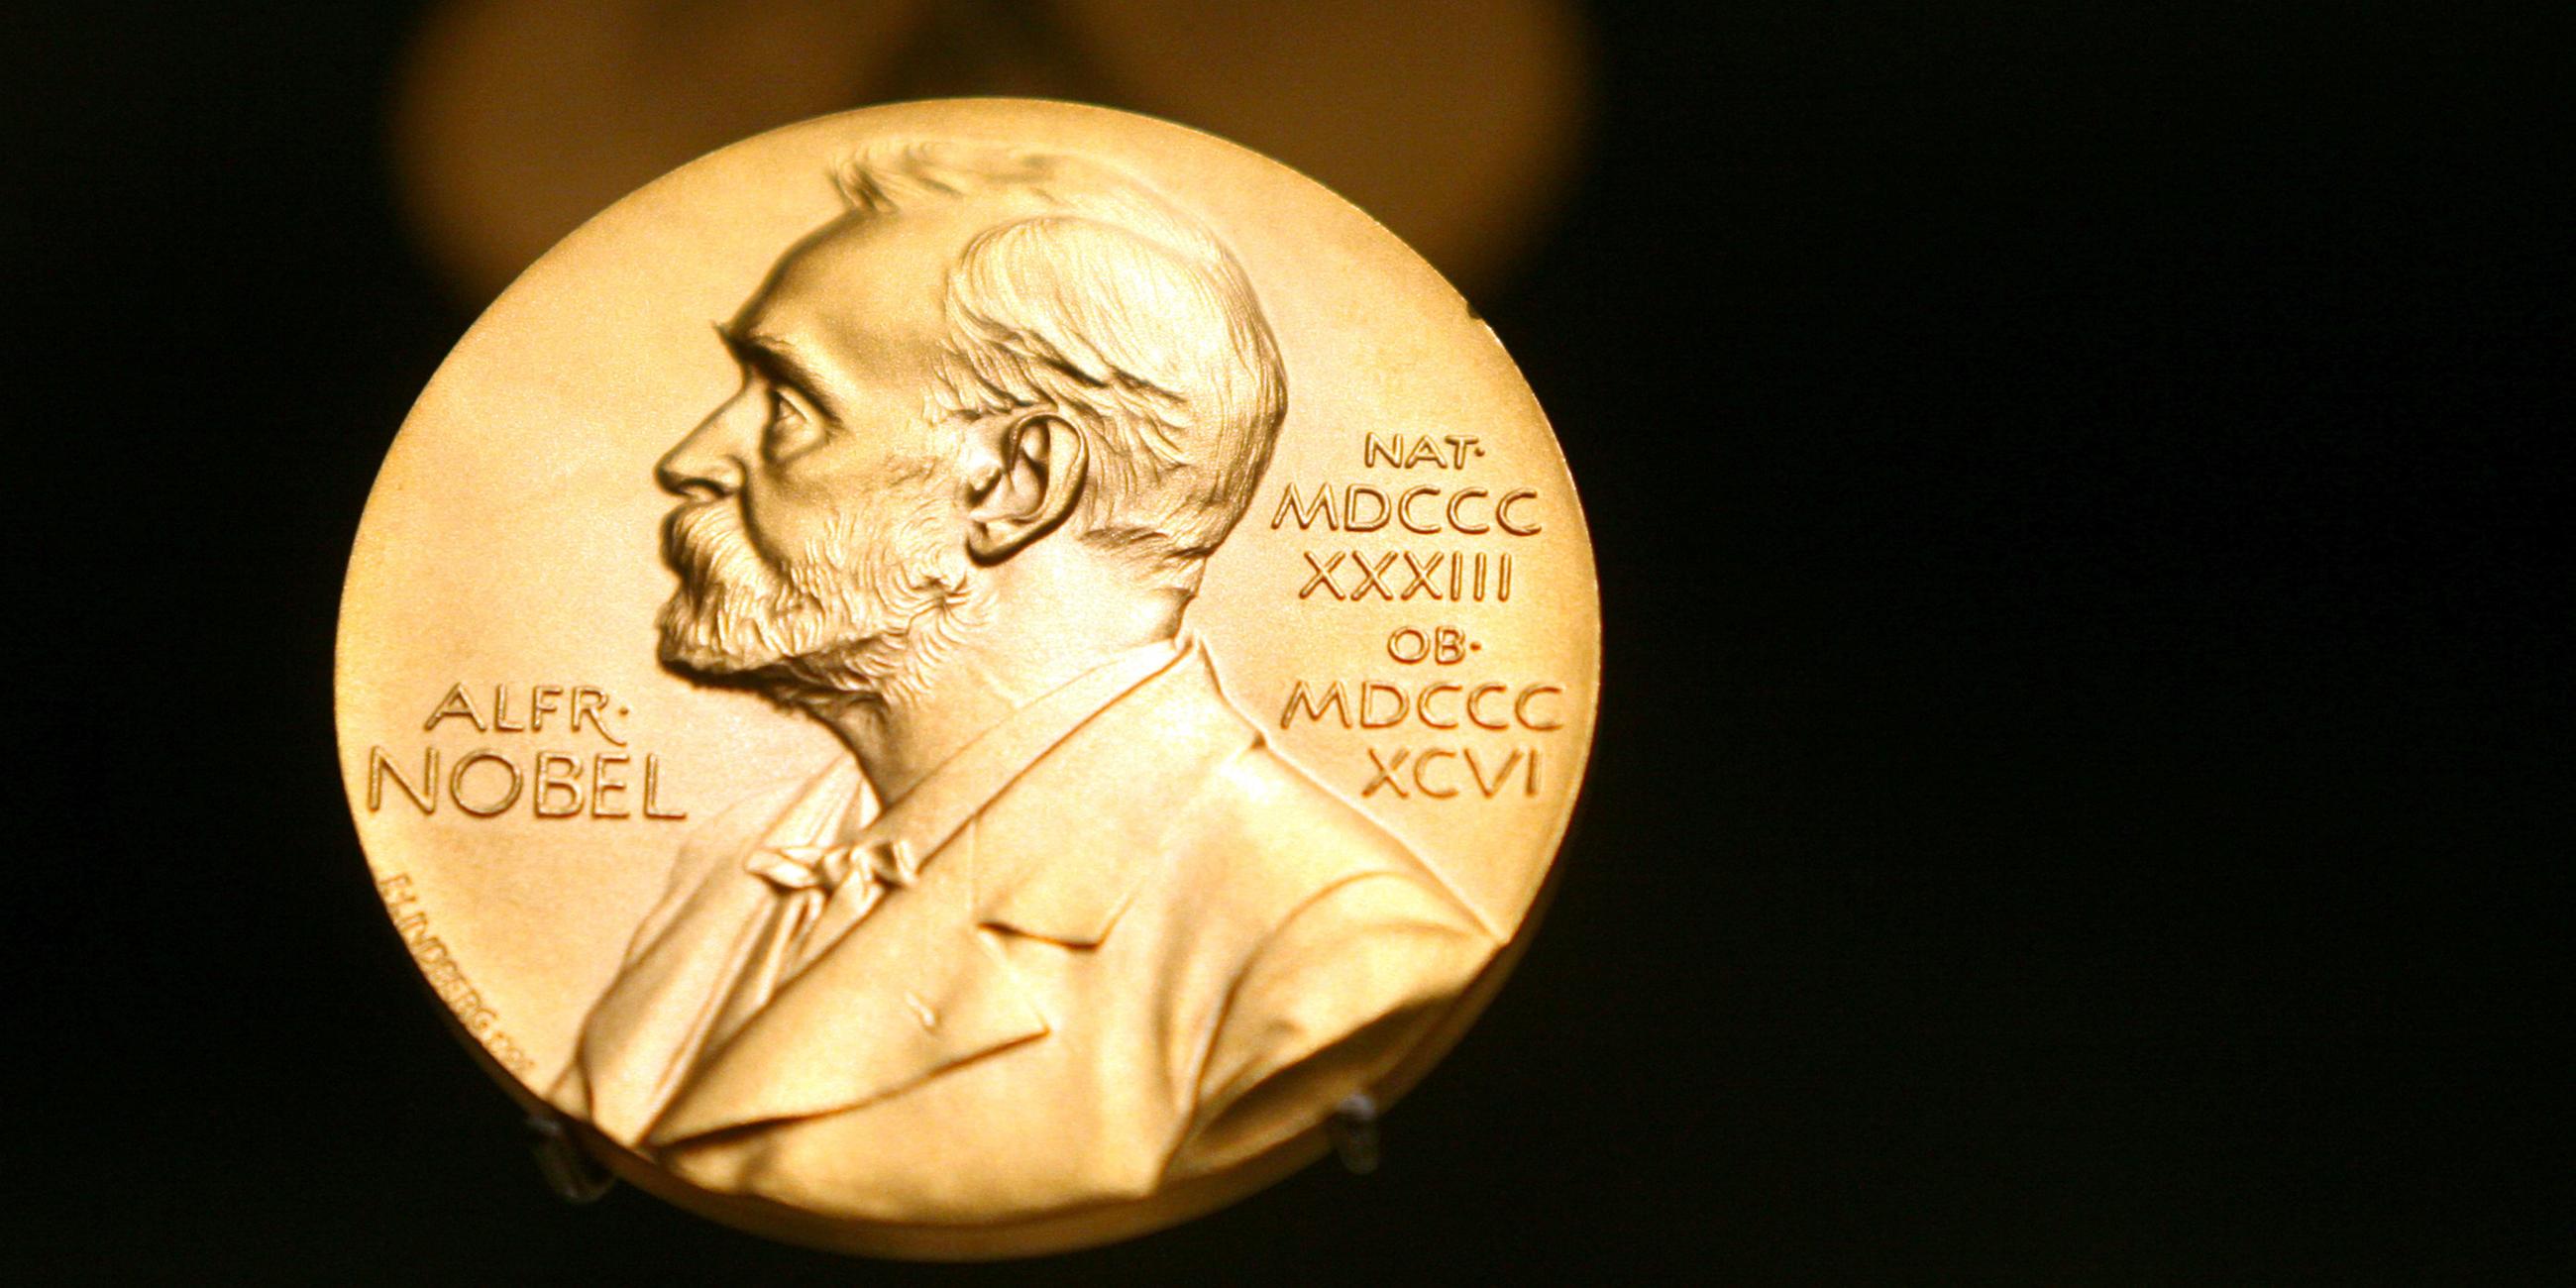 Eine Medallie zeigt den Kopf von Alfred Nobel.